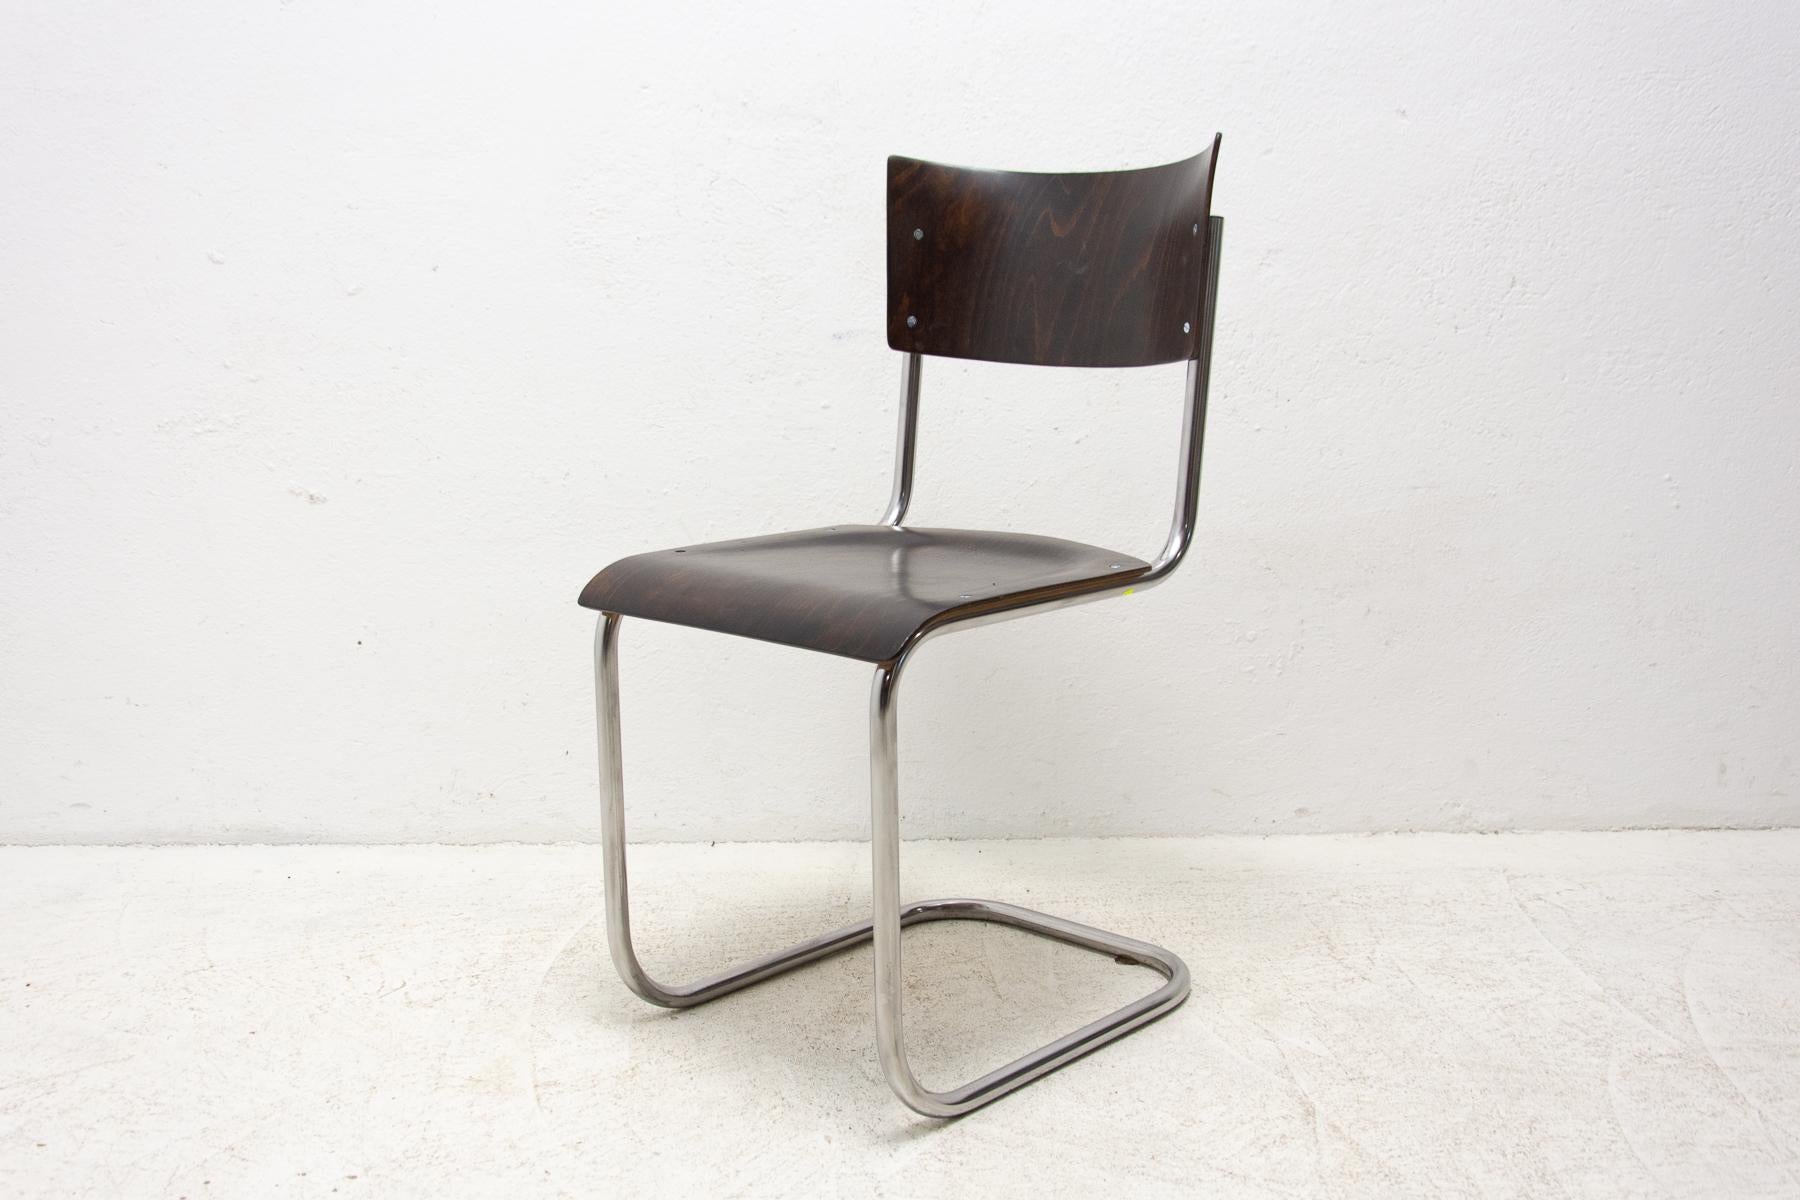 Cette chaise, l'une des plus célèbres, a été conçue dans les années 1930 par Mart Stam et fabriquée dans l'ancienne Tchécoslovaquie dans les années 1950. La chaise est dotée d'un cadre en acier tubulaire chromé, d'une assise et d'un dossier en